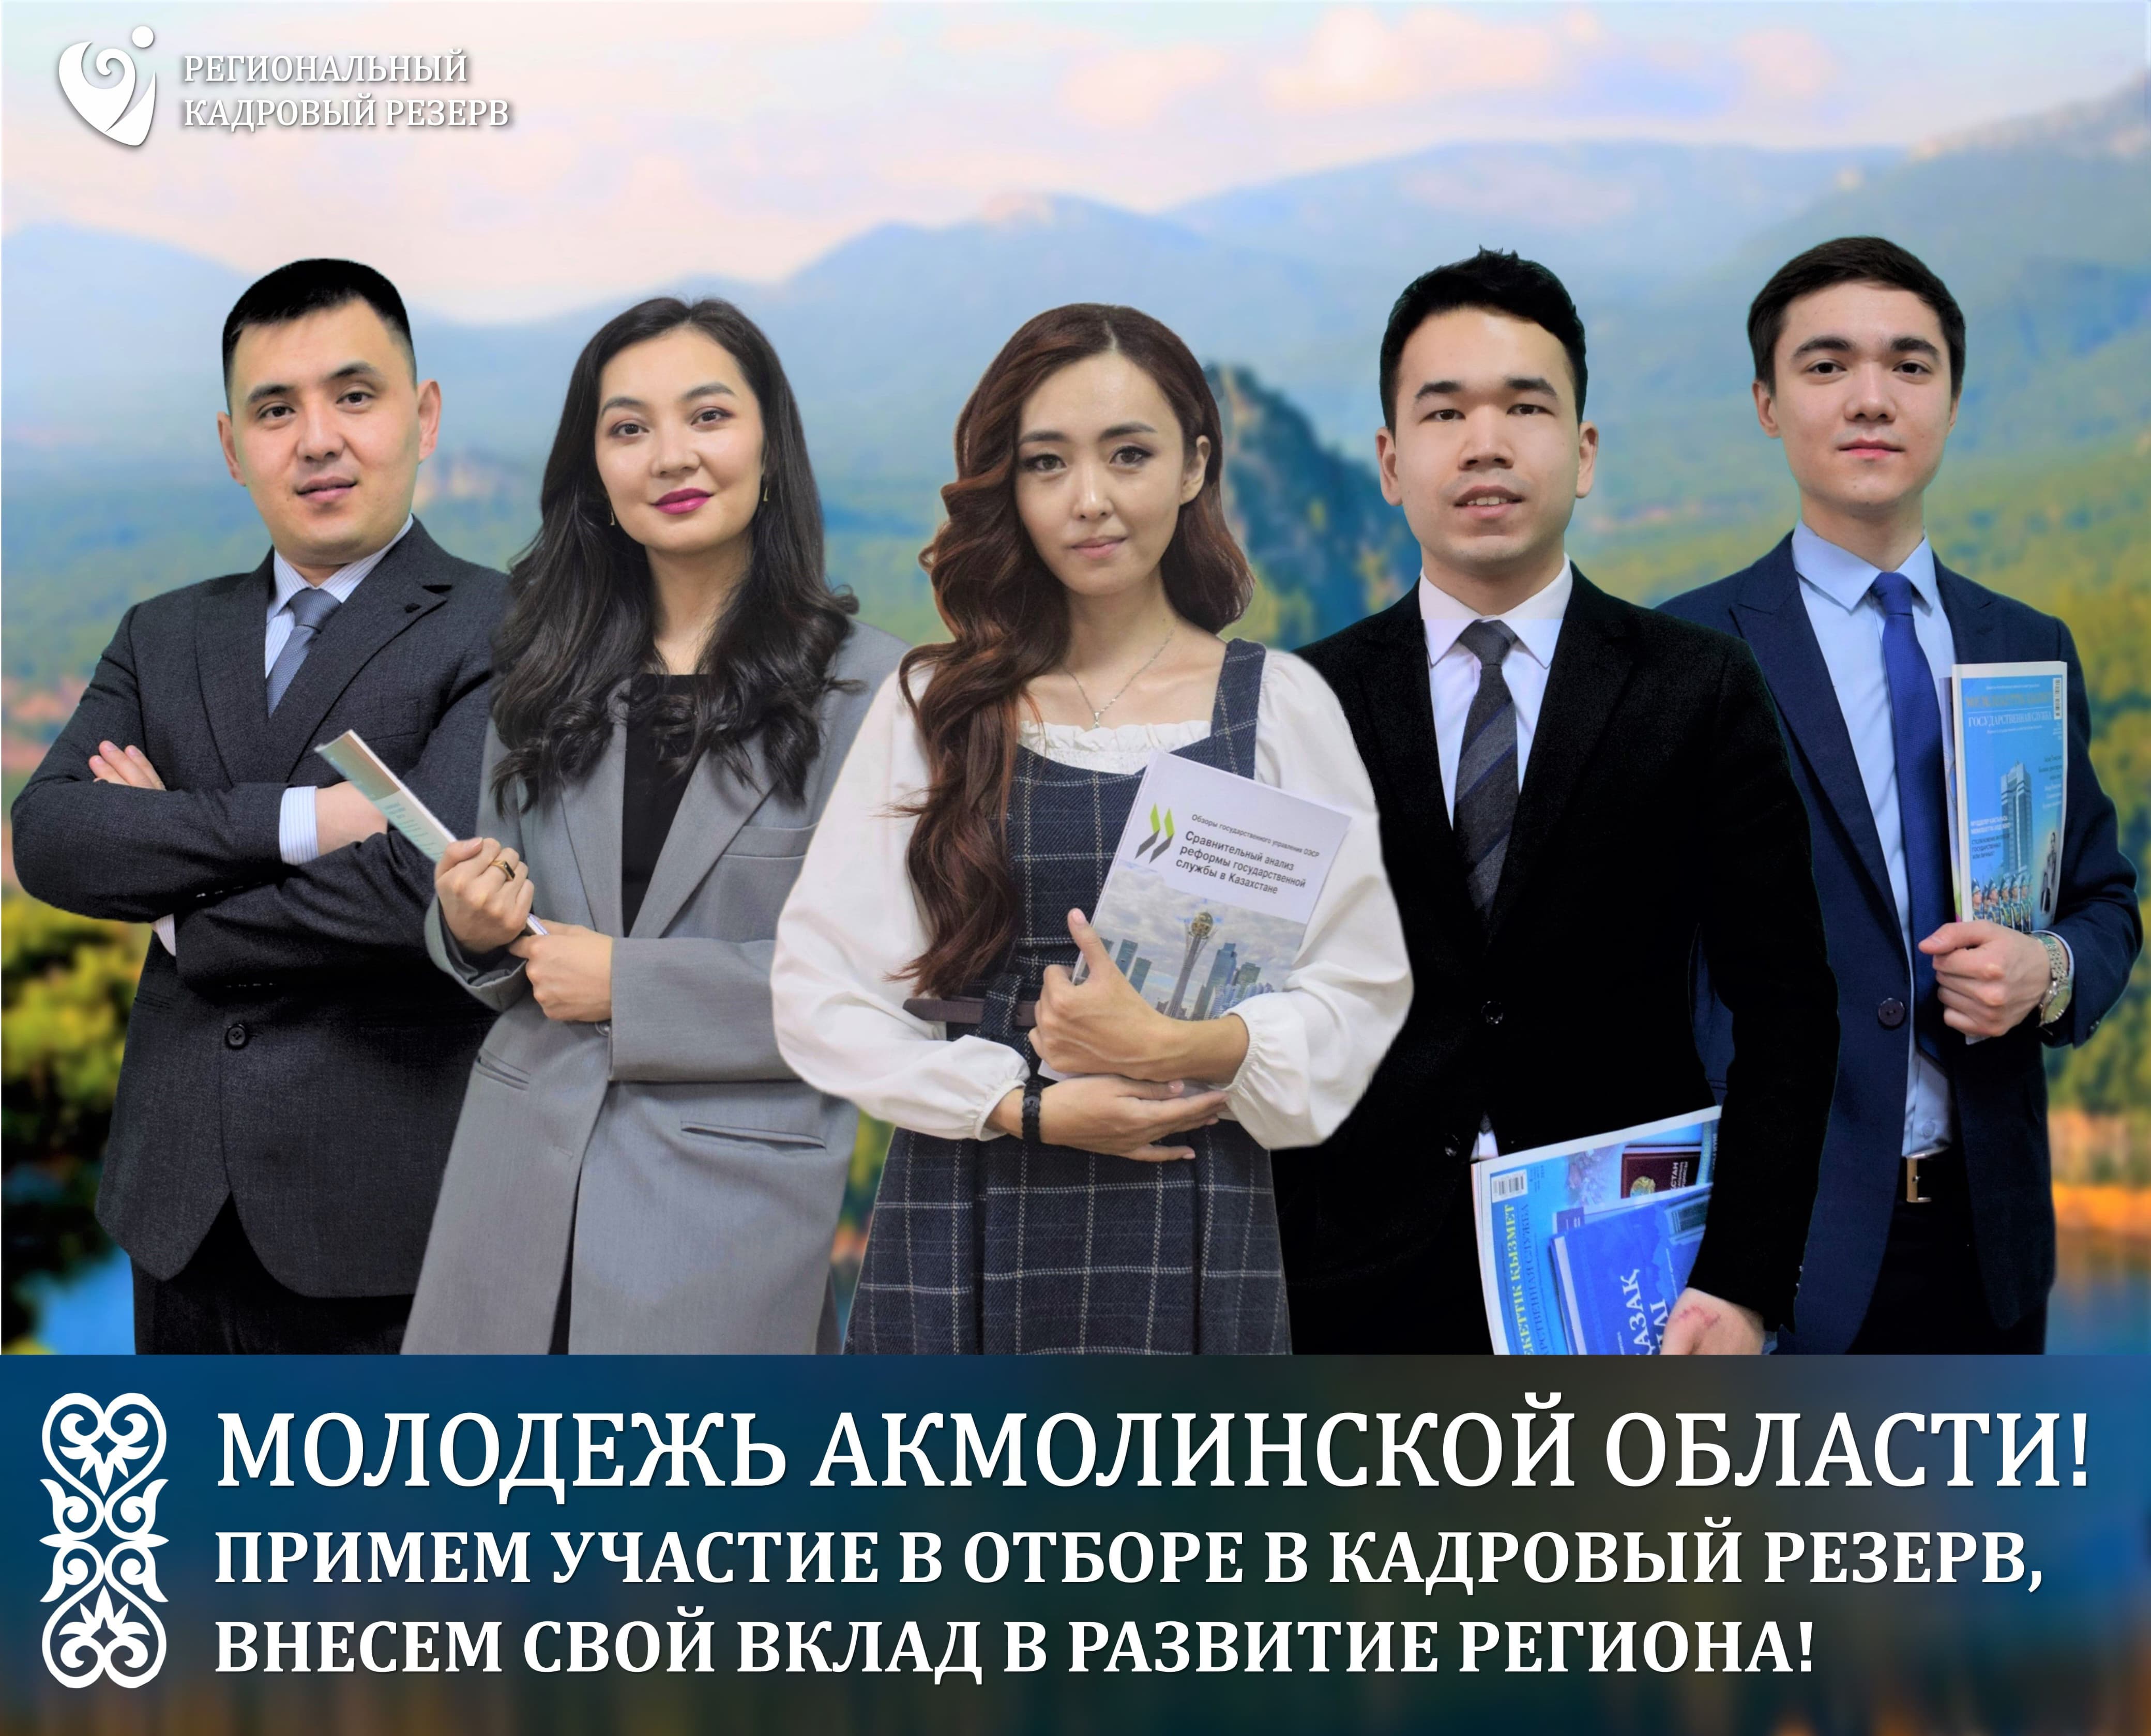 Кадровая комиссия Акмолинской области объявляет об отборе в Региональный кадровый резерв.